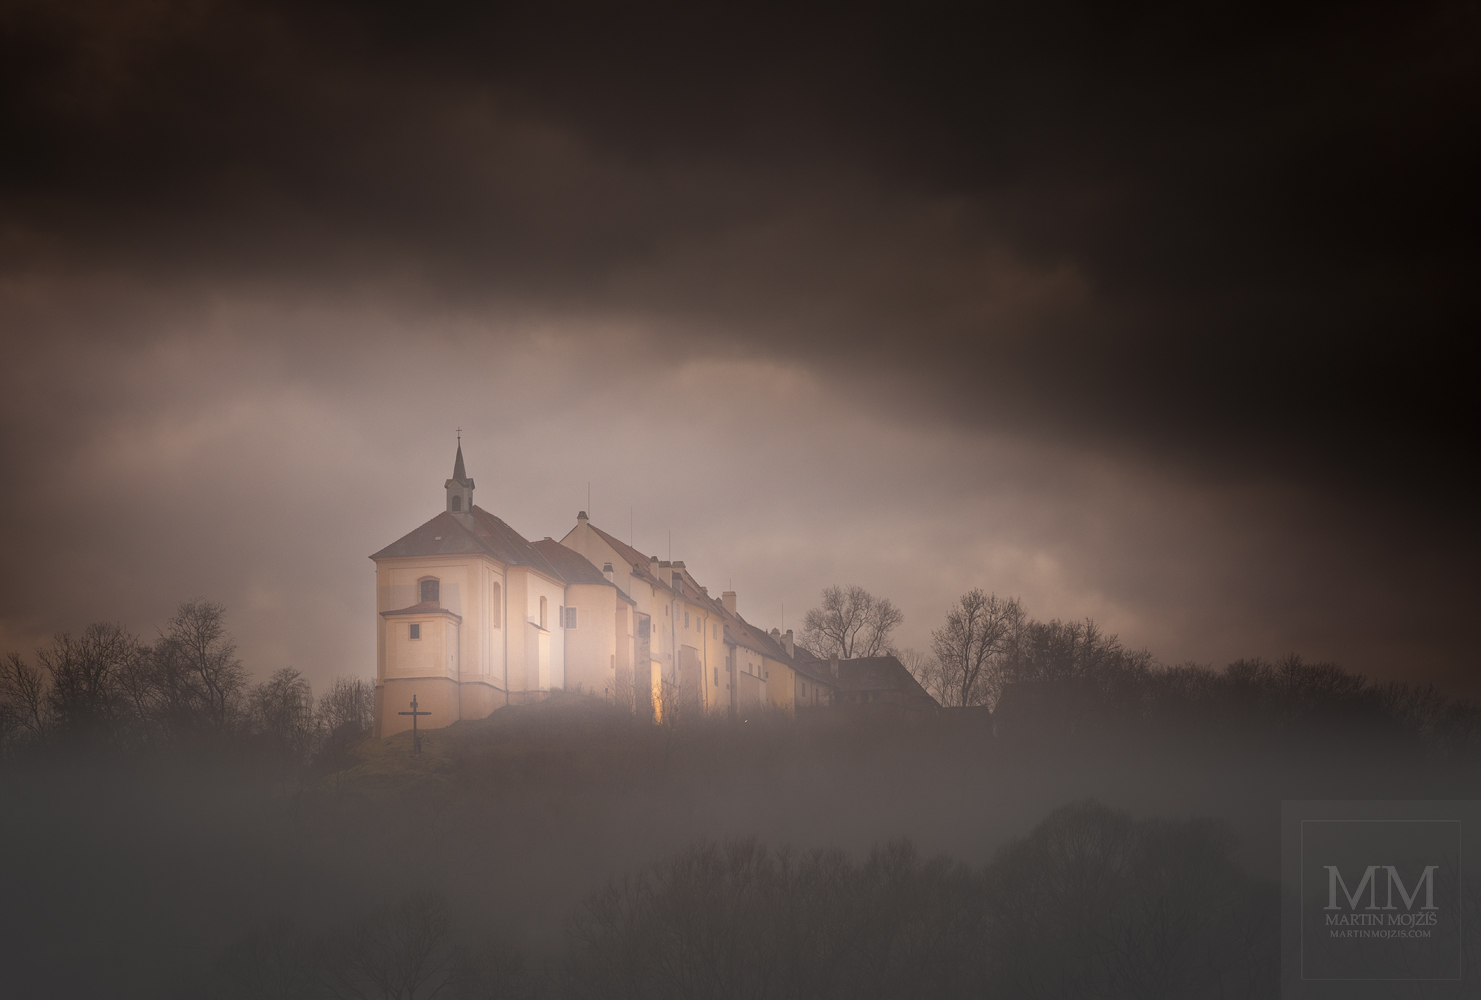 Velkoformátová umělecká fotografie zámku na ostrohu v mlhách.